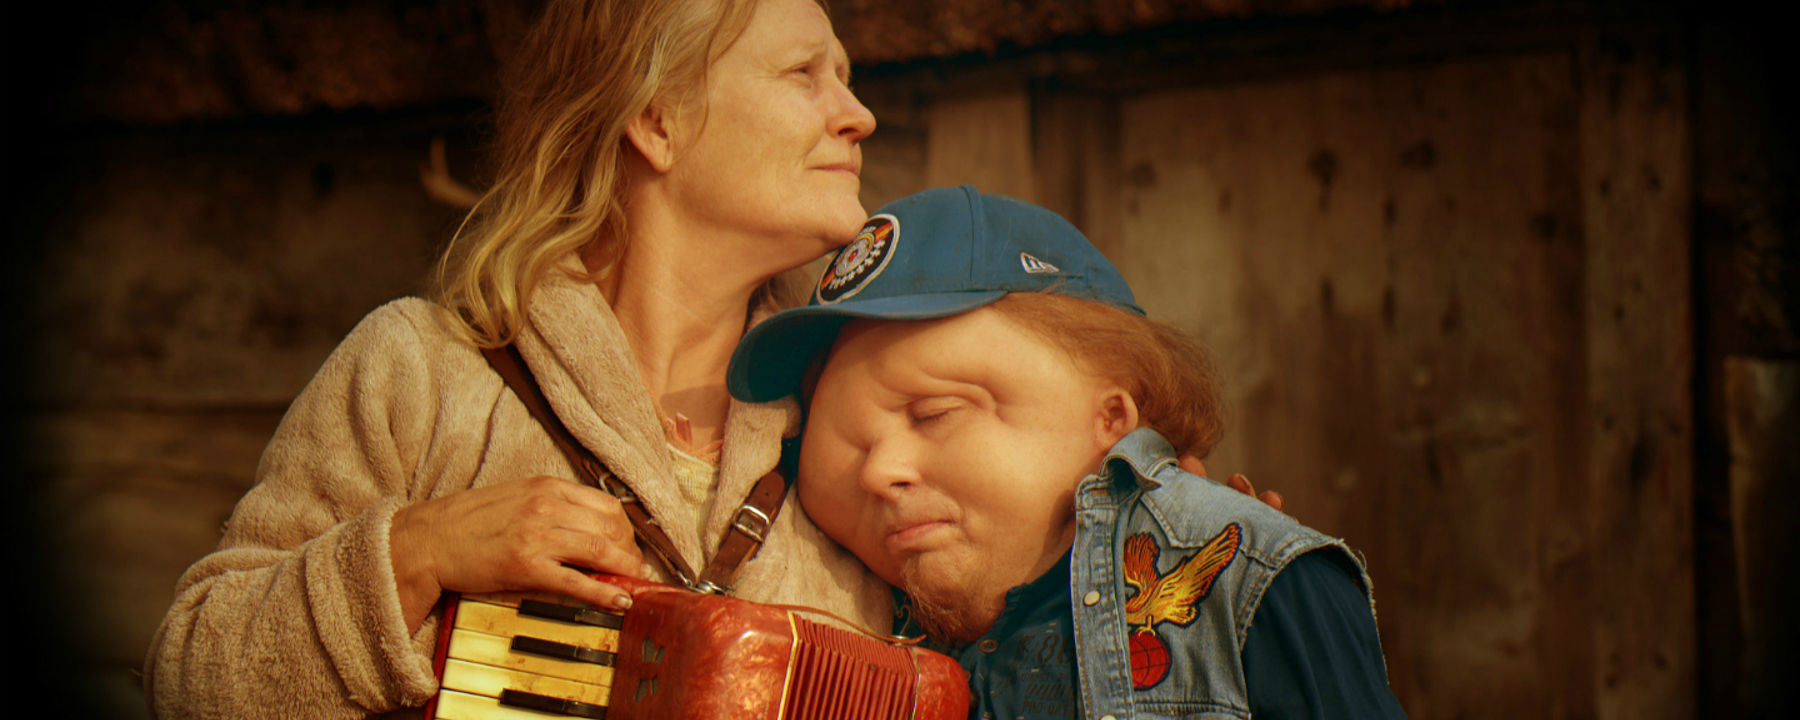 Stillbild från filmen Jätten. Christian Andréns karaktär lutar huvudet mot en annan karaktär.